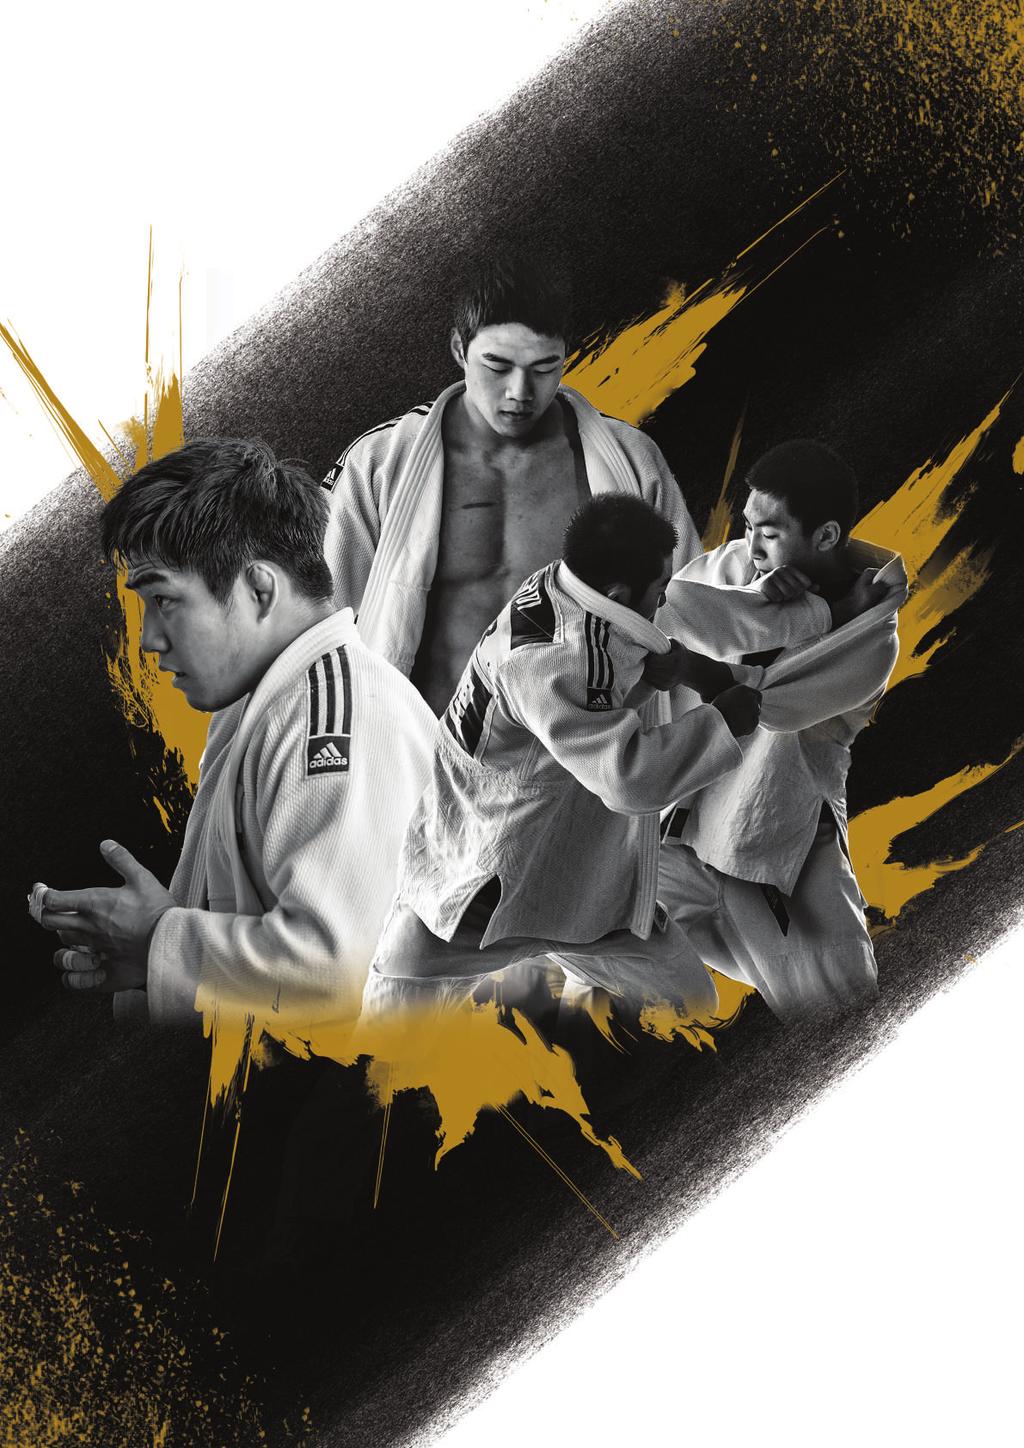 CONTENTS Korea Judo Association Vol.117 02 특별 인터뷰 조재기 국민체육진흥공단 이사장 10 국내대회(1) 용인대 총장기 중고대회 06 12 14 국내대회(2) 16 국내대회(3) 20 국제대회 18?